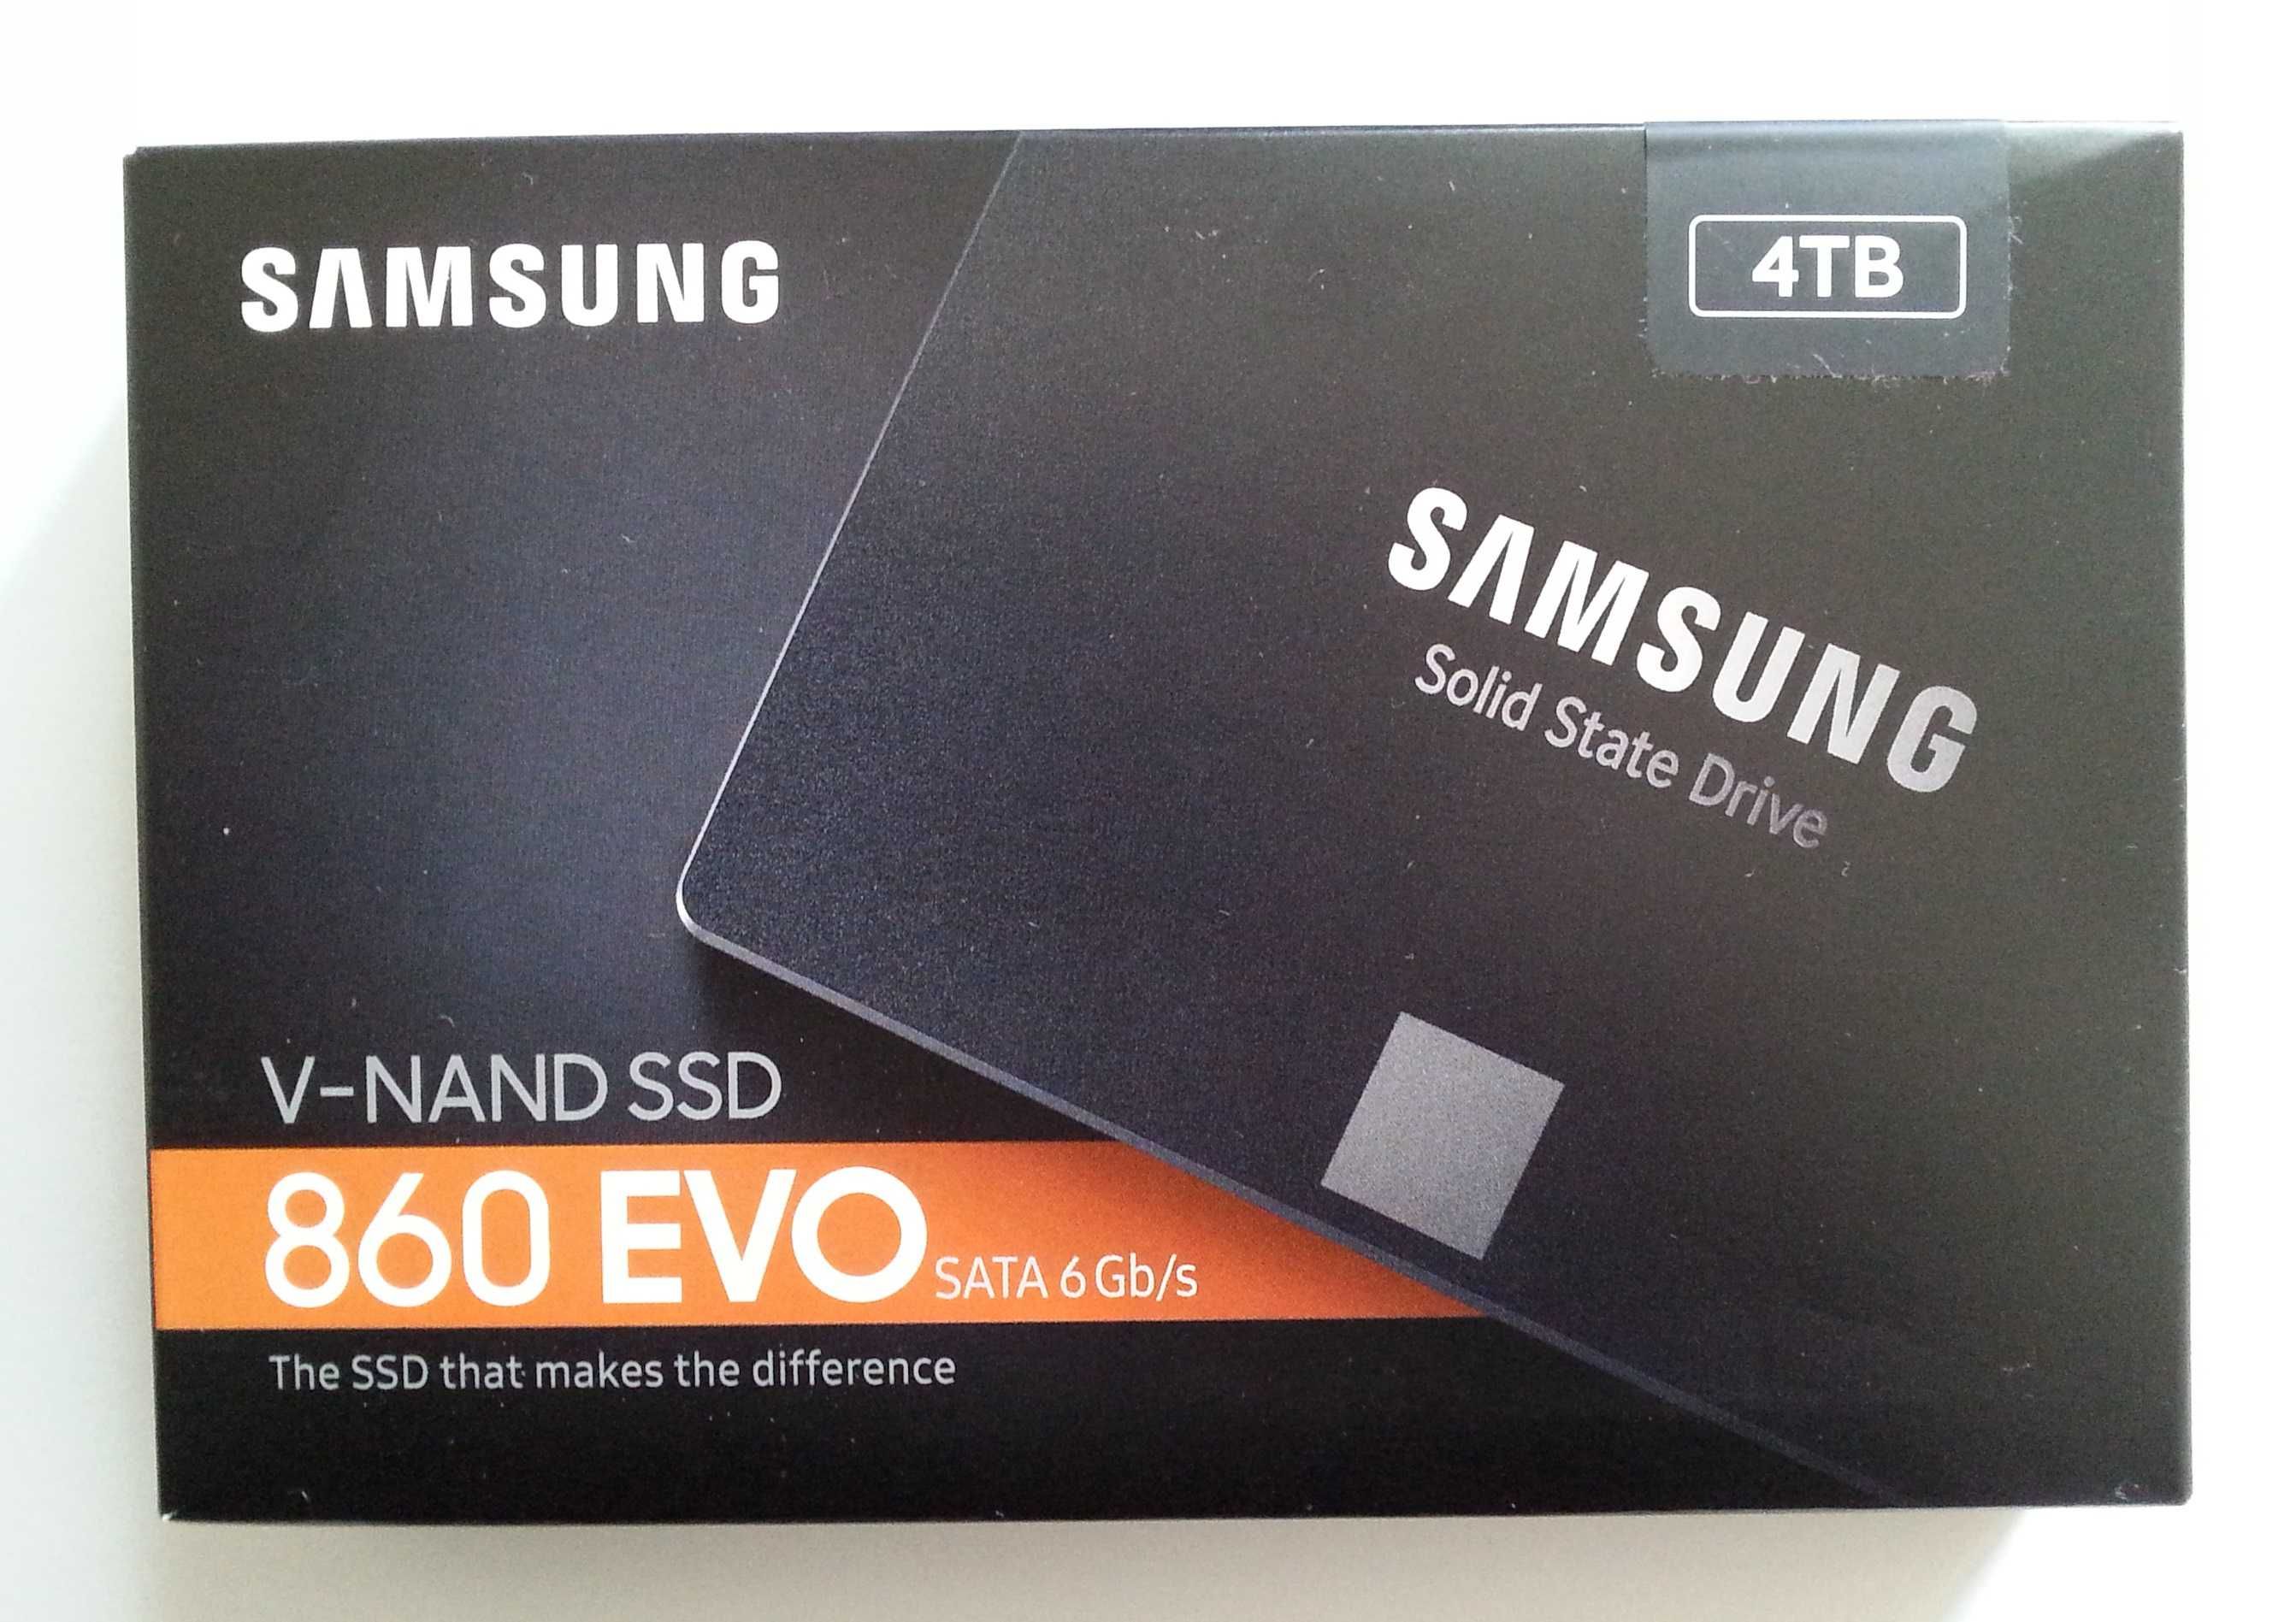 Samsung,500gb-nowy, zapakowany-dysk SSD.Inne modele foto.